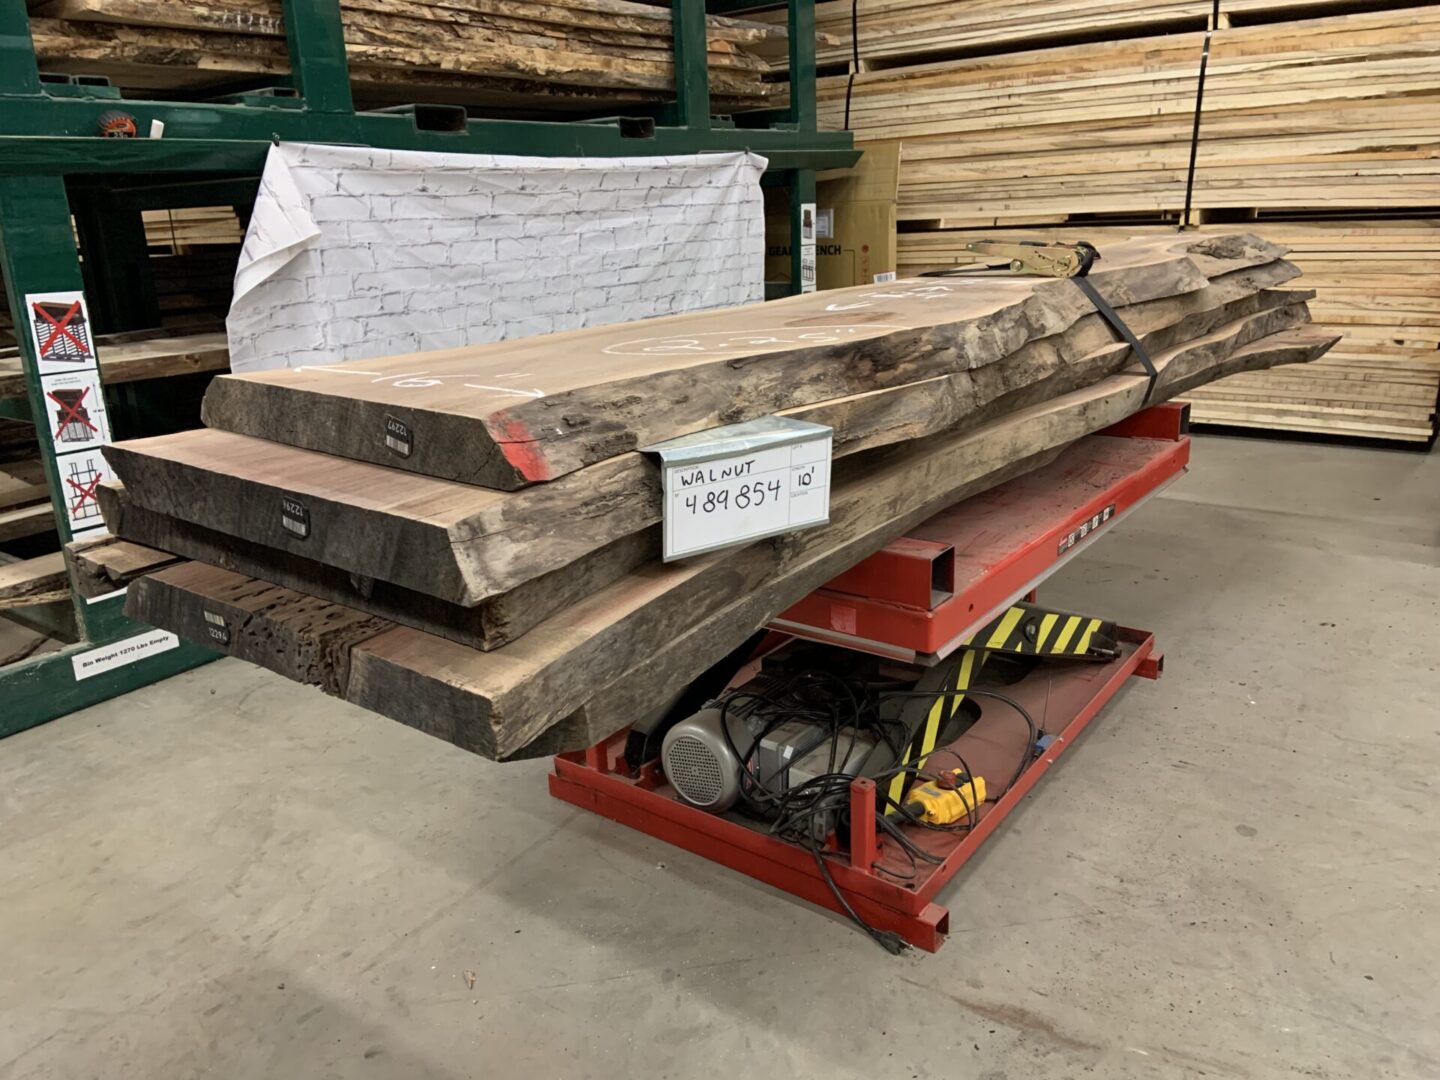 A Bundle of Walnut Logs 489854, Ten Feet Size